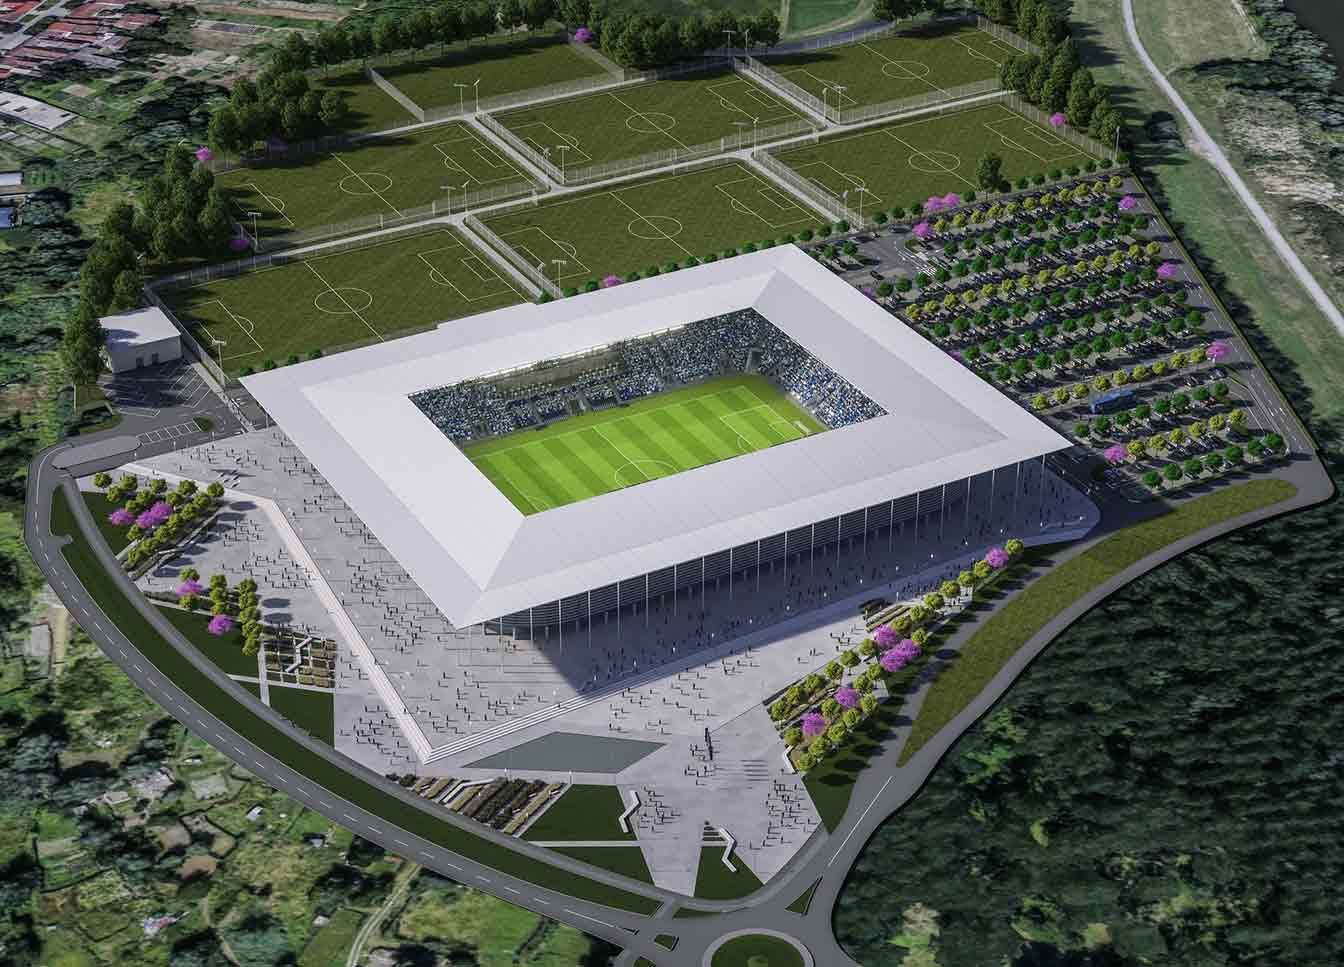 New NK Osijek Stadium in Croatia